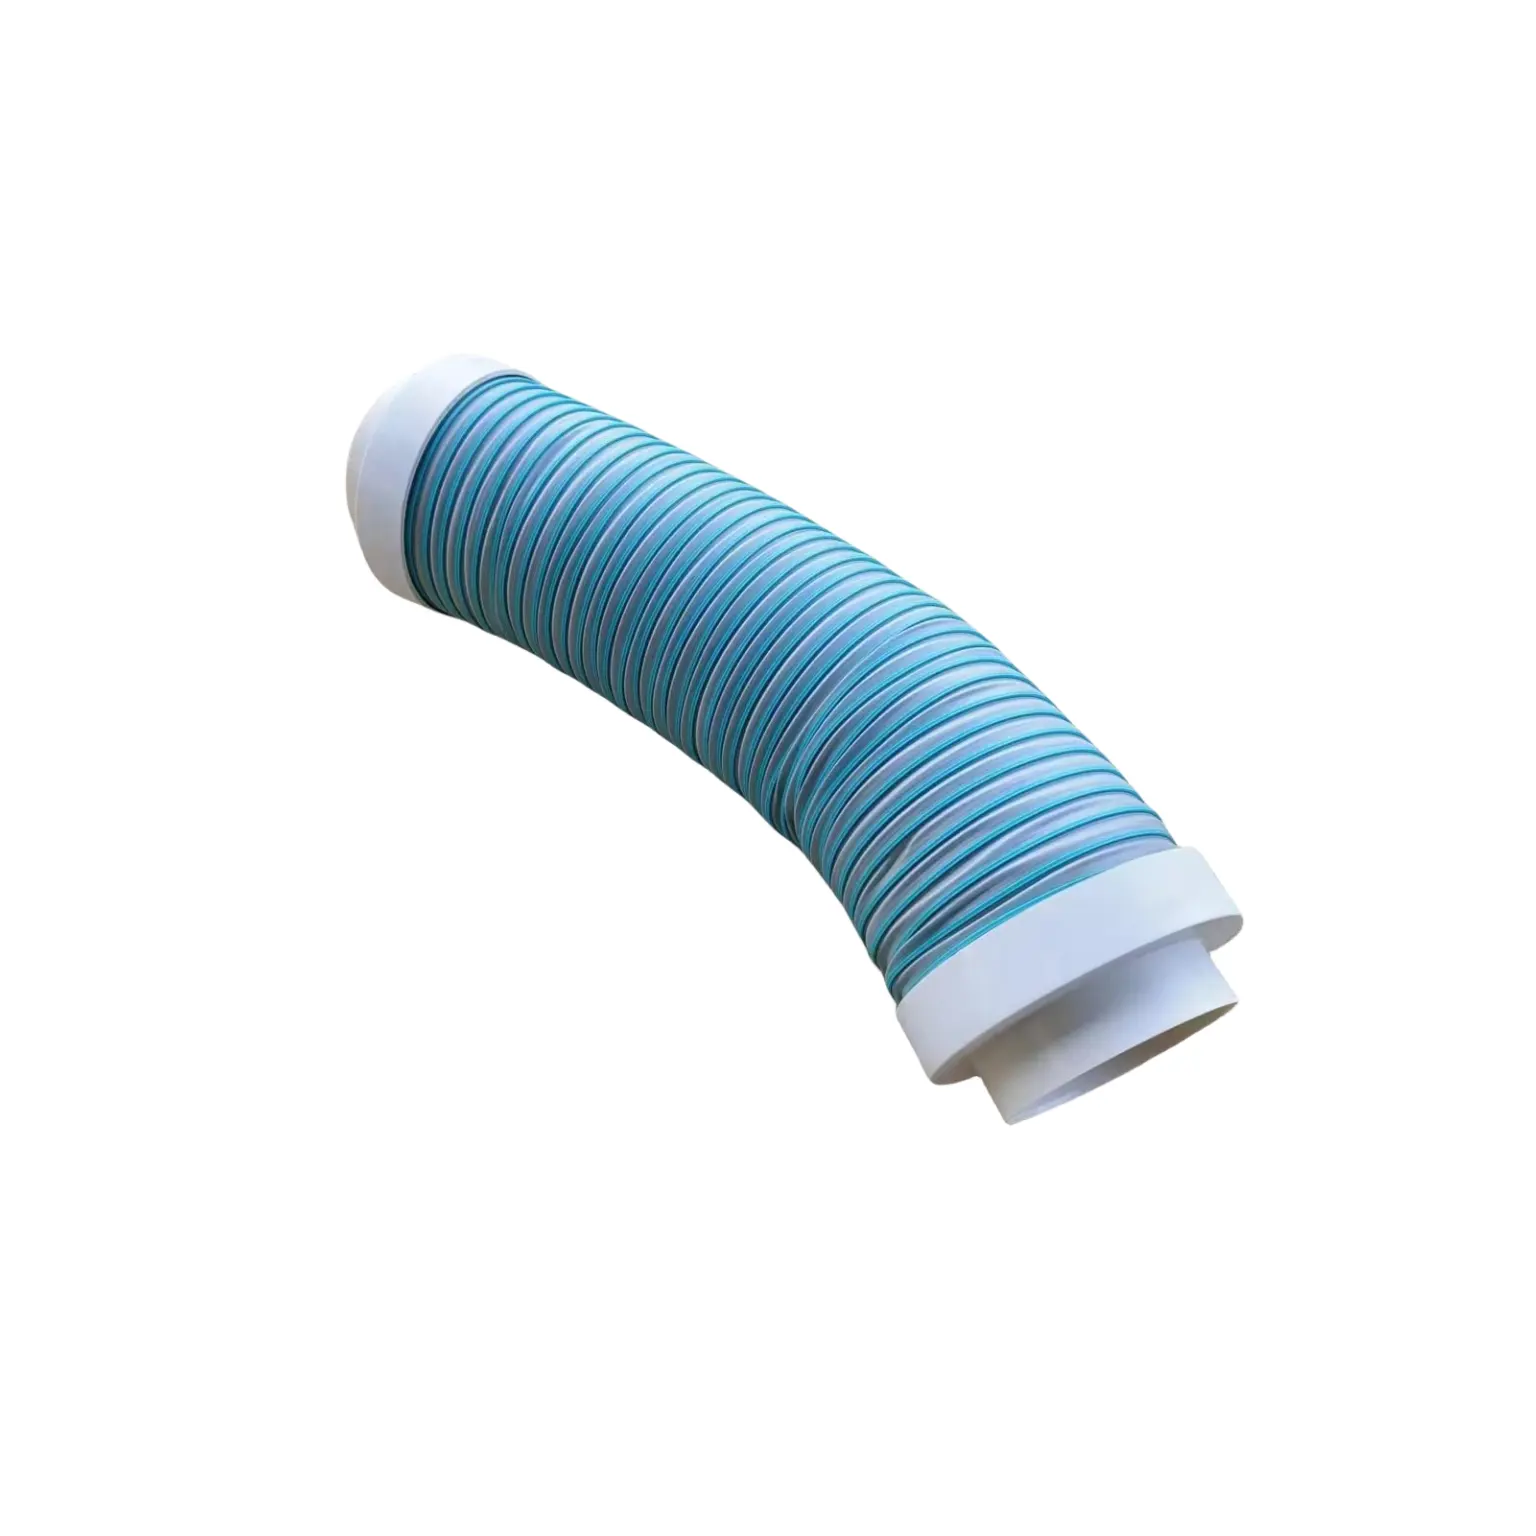 वेंटिलेशन के लिए वायुप्रवाह में शोर को अवशोषित करने के लिए नीला टीपीवी लोचदार ध्वनि-अवशोषित पाइप